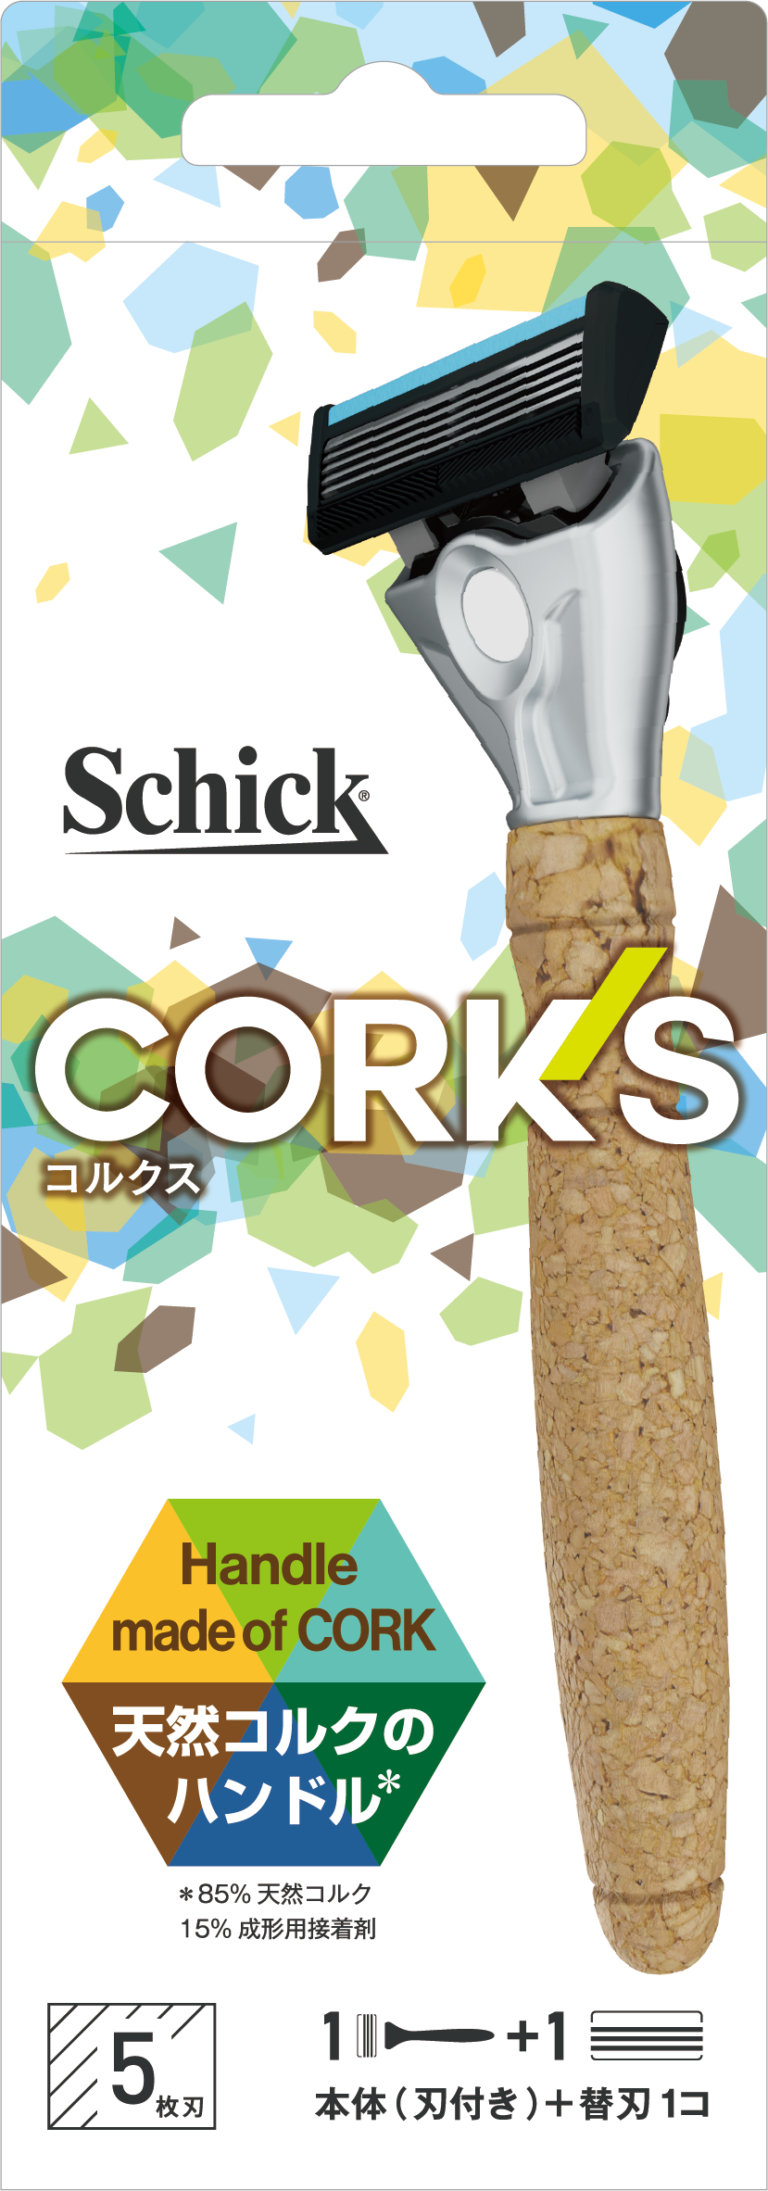 Schick から環境に優しい、サスティナブルなカミソリ発売！再生可能な天然コルク 85%をハンドル部に使用したカミソリ「コルクスホルダー」2021 年 9 月 19 日（日）日本上陸！のメイン画像